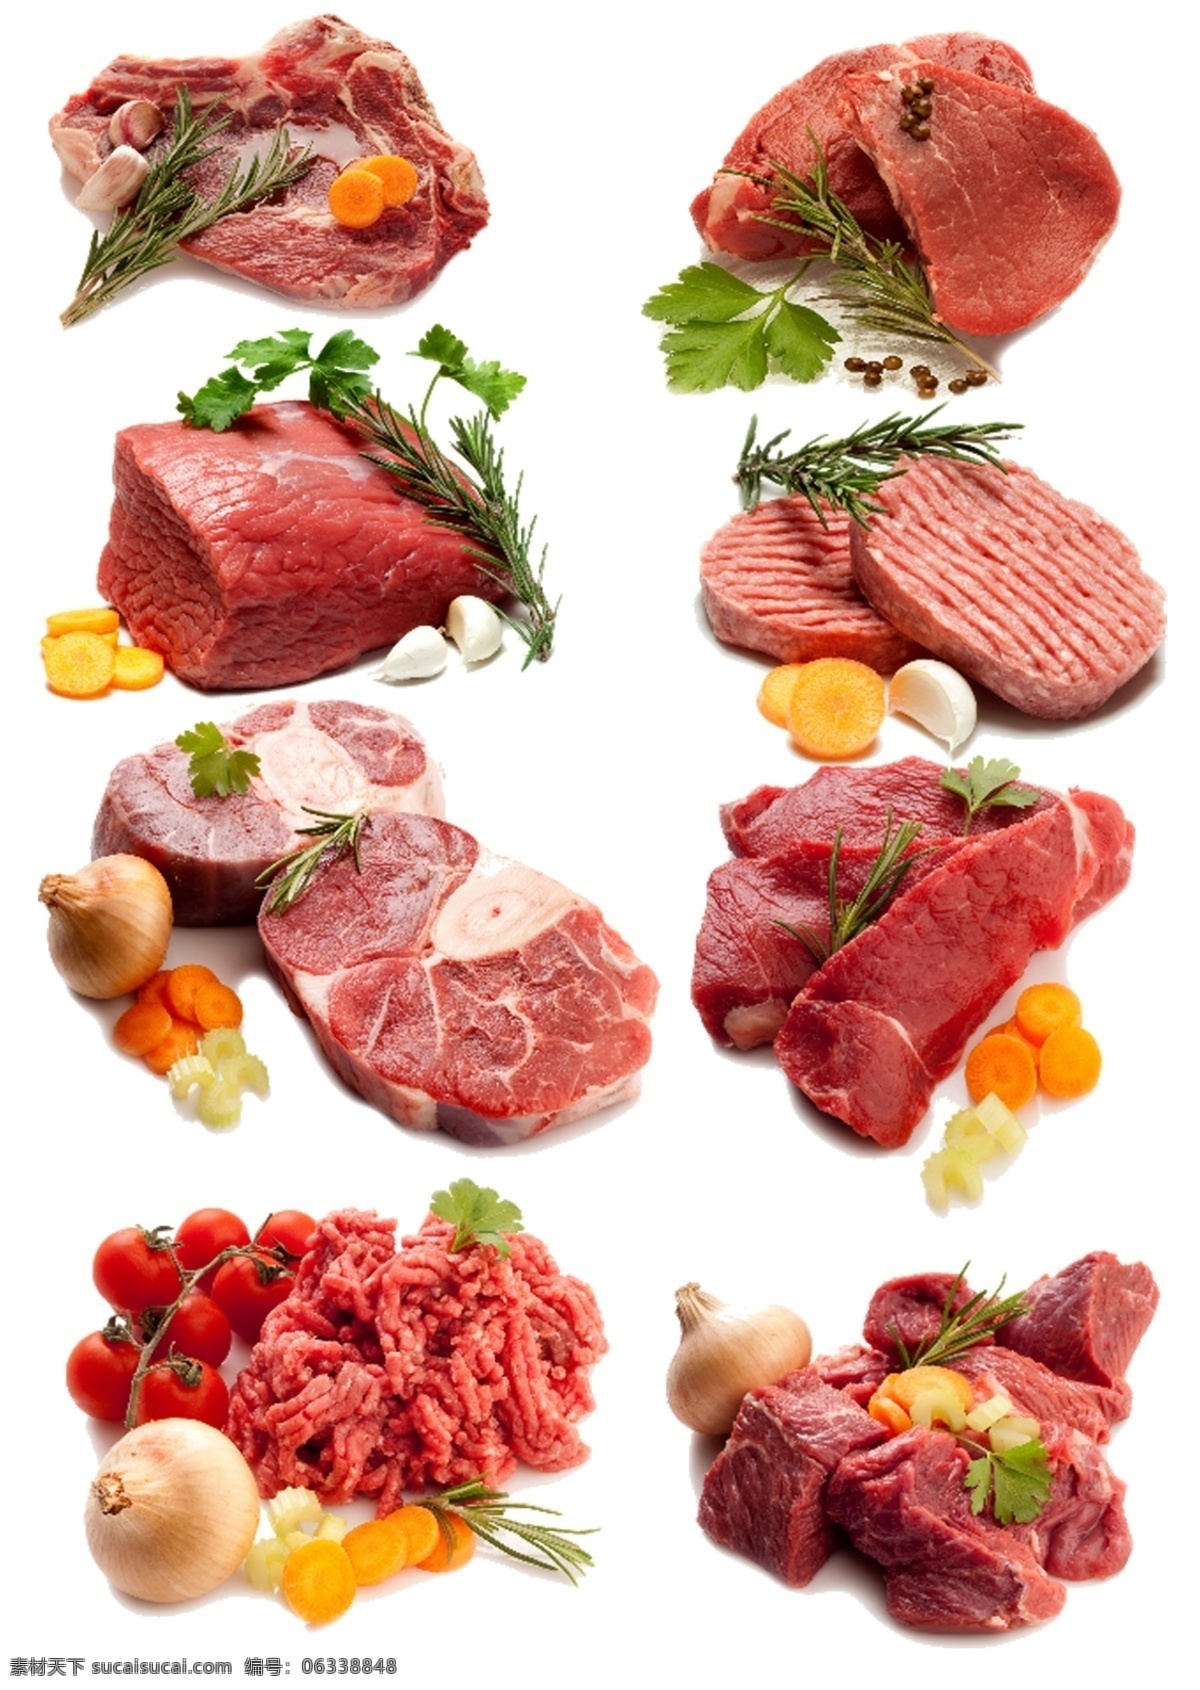 肉 肉片 鲜肉 瘦肉 牛肉 肉丝 精肉 羊肉 生鲜 商场广告素材 促销海报素材 商场传单 分层